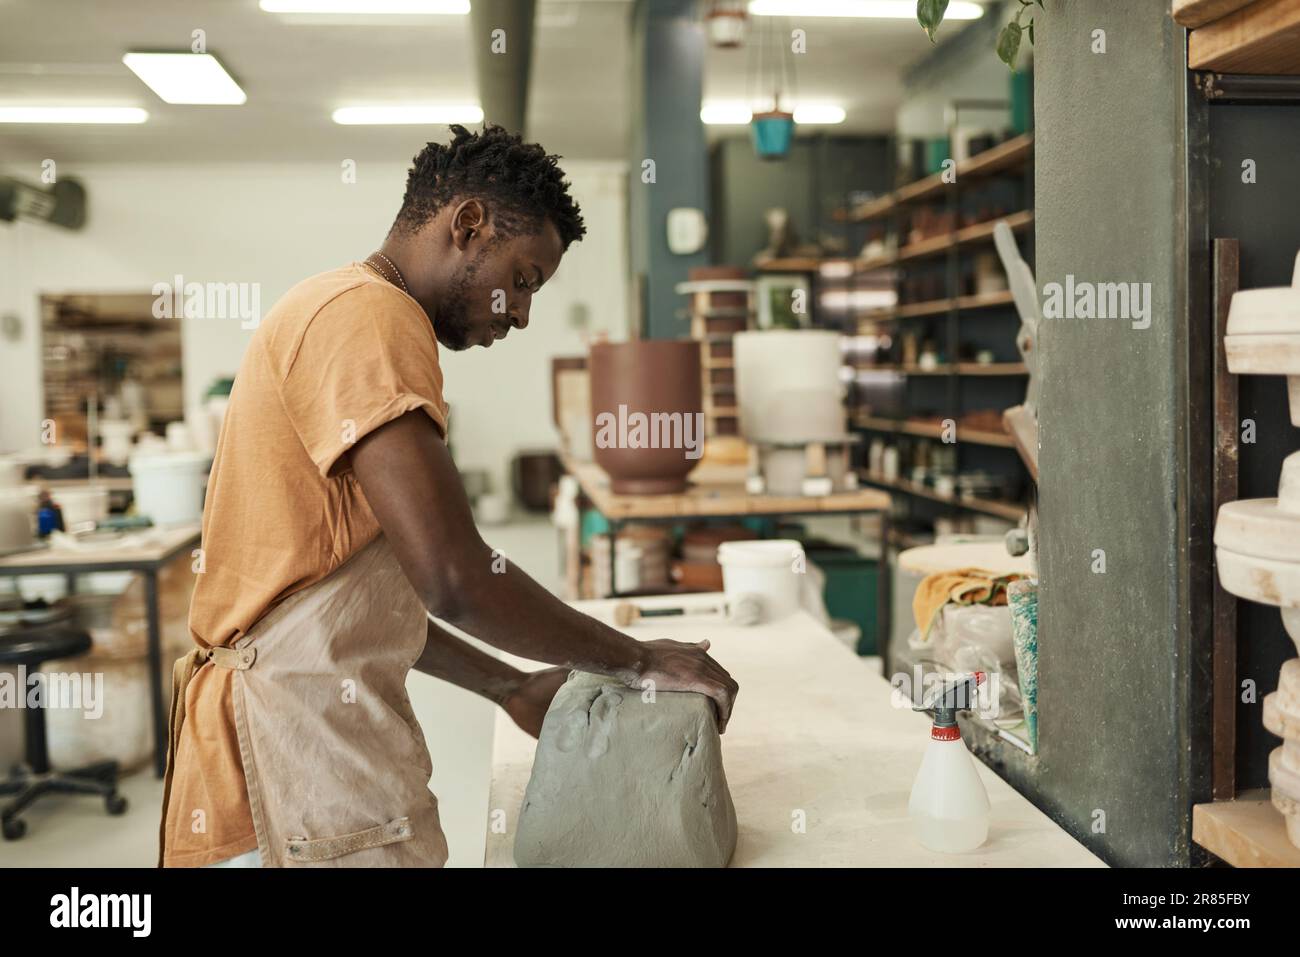 Jeune potier africain travaillant avec une grande dalle d'argile humide à un établi Banque D'Images